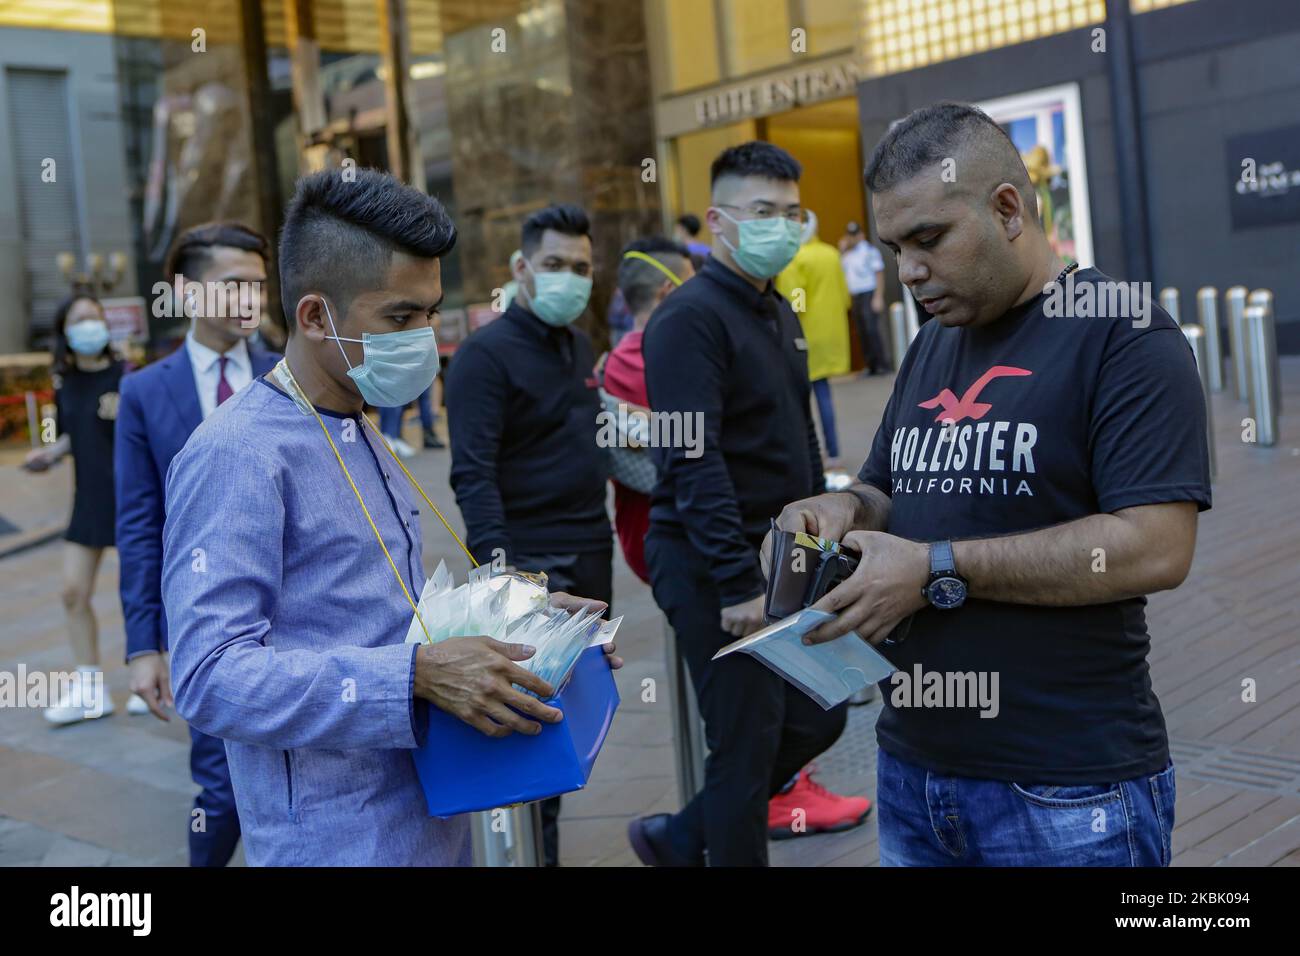 Vendedores ambulantes locales de máscaras contra la propagación del Coronavirus COVID-19 en Kuala Lumpur, Malasia, 14 de marzo de 2020. Más de 70.000 personas se han recuperado del coronavirus en todo el mundo, casi la mitad del total de infecciones registradas desde que comenzó el brote. (Foto de Aizuddin Saad/NurPhoto) Foto de stock